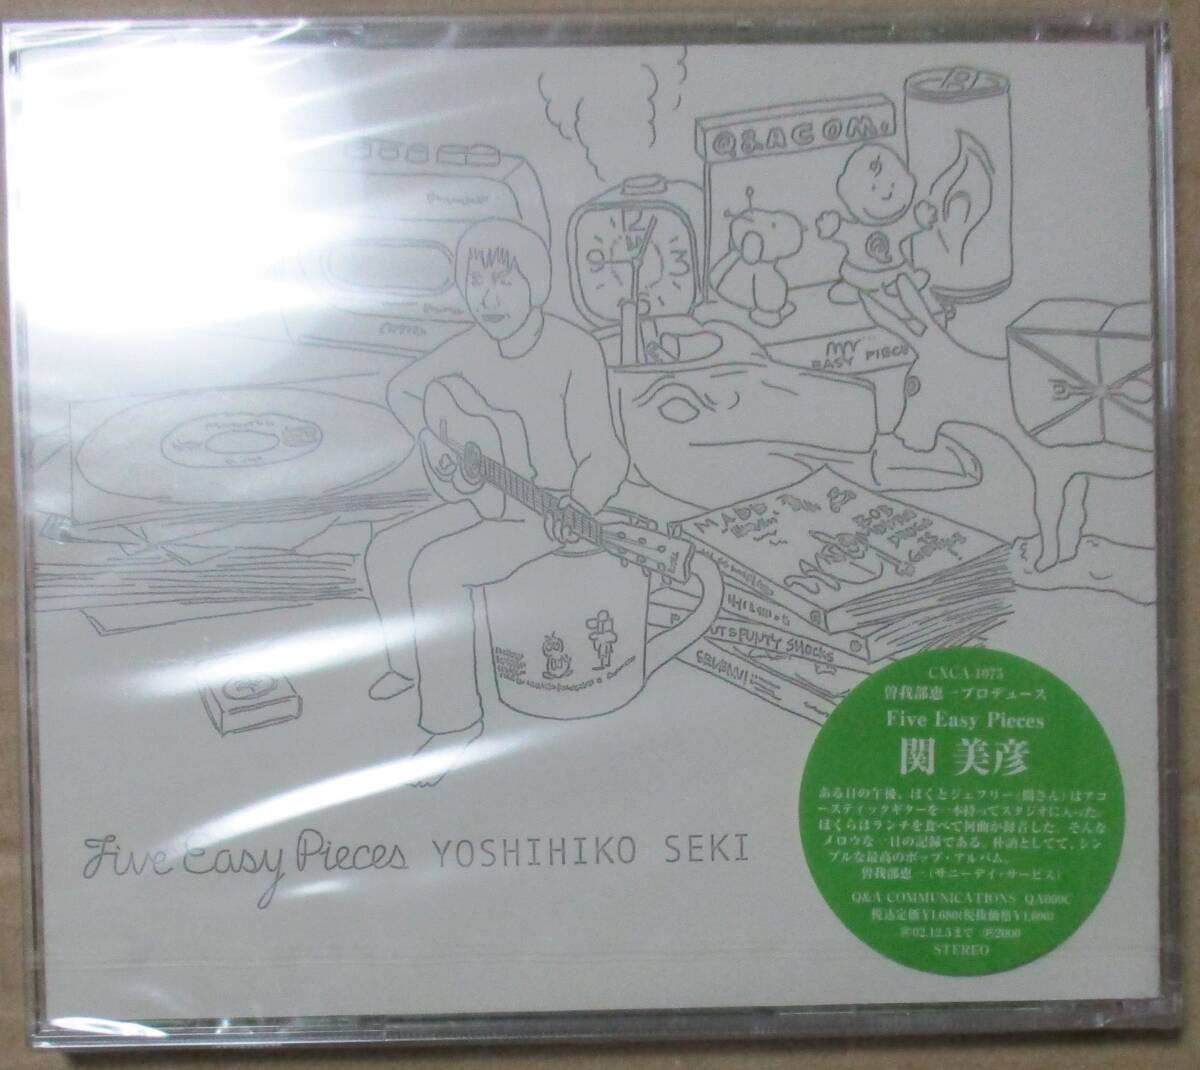 関美彦 / Five Easy Pieces (CD) _画像1